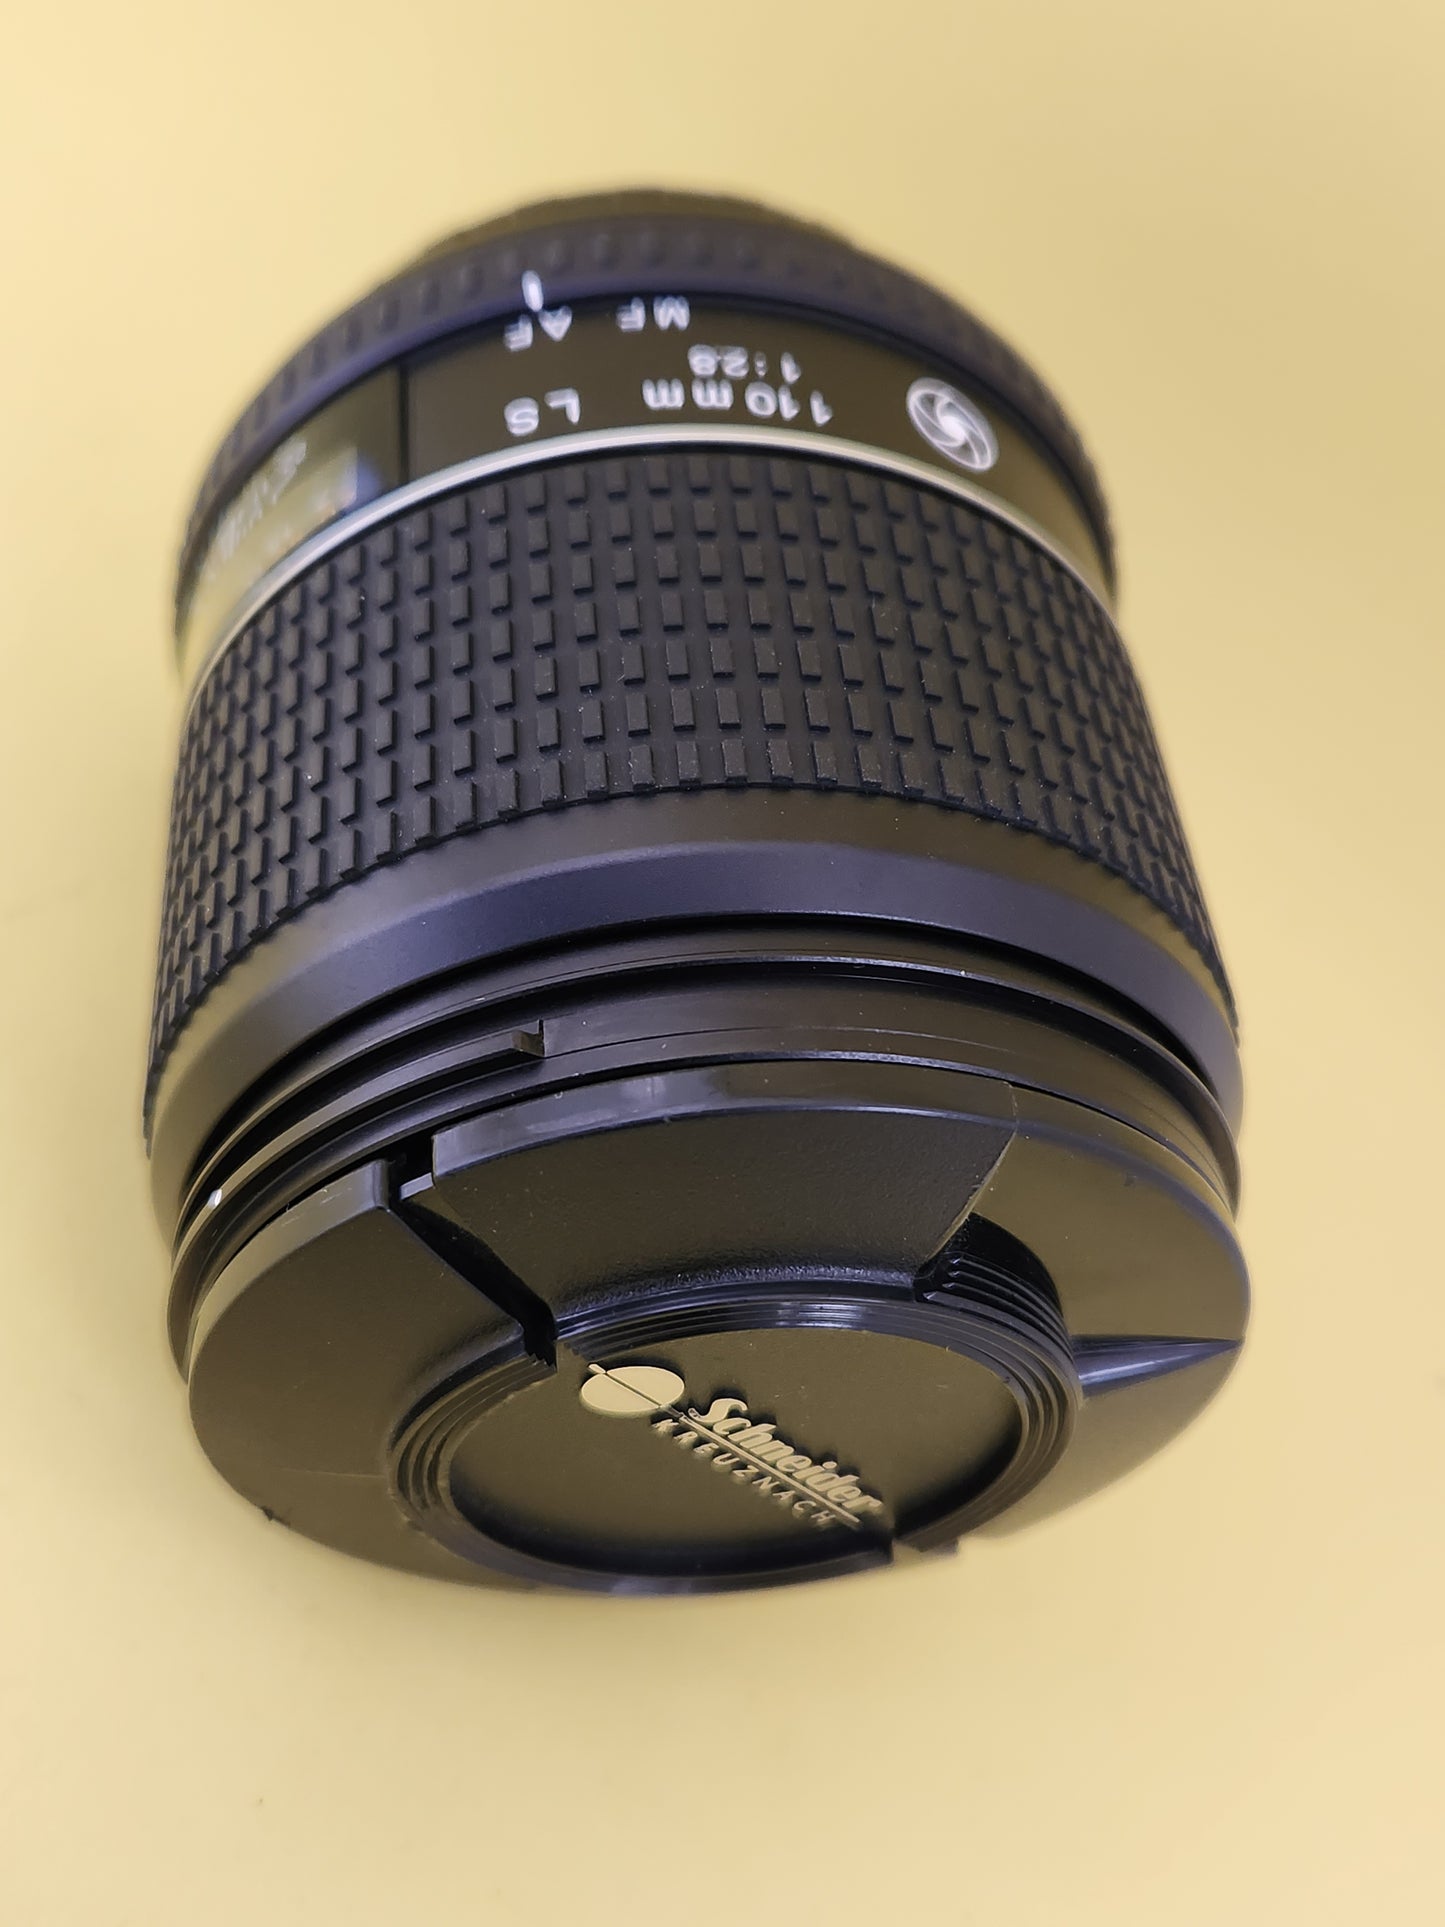 Schneider-Kreuznach lens 110mm LS 1:2.8 used